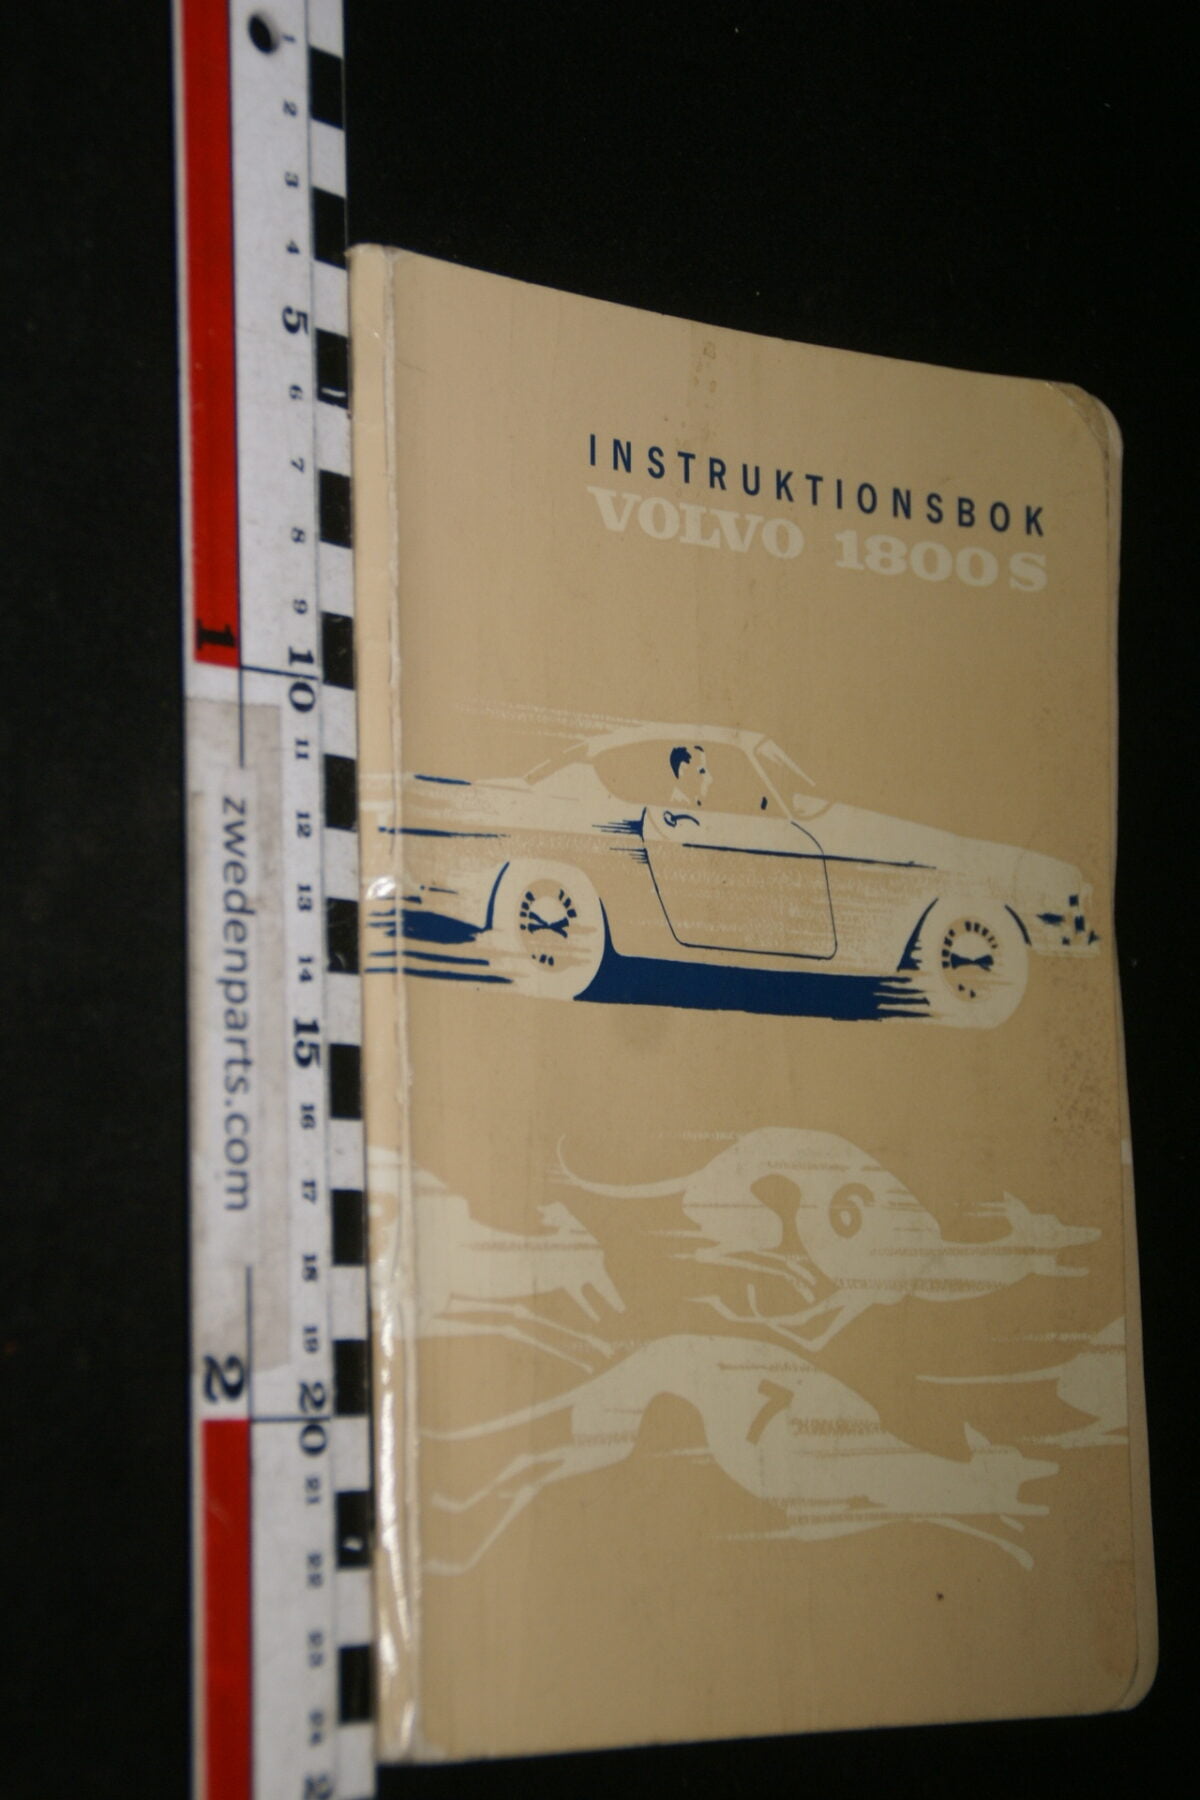 DSC00746 1968 instructieboek, handboek  origineel Volvo 1800S, nr TP483-2, Svenska-2f1cef73